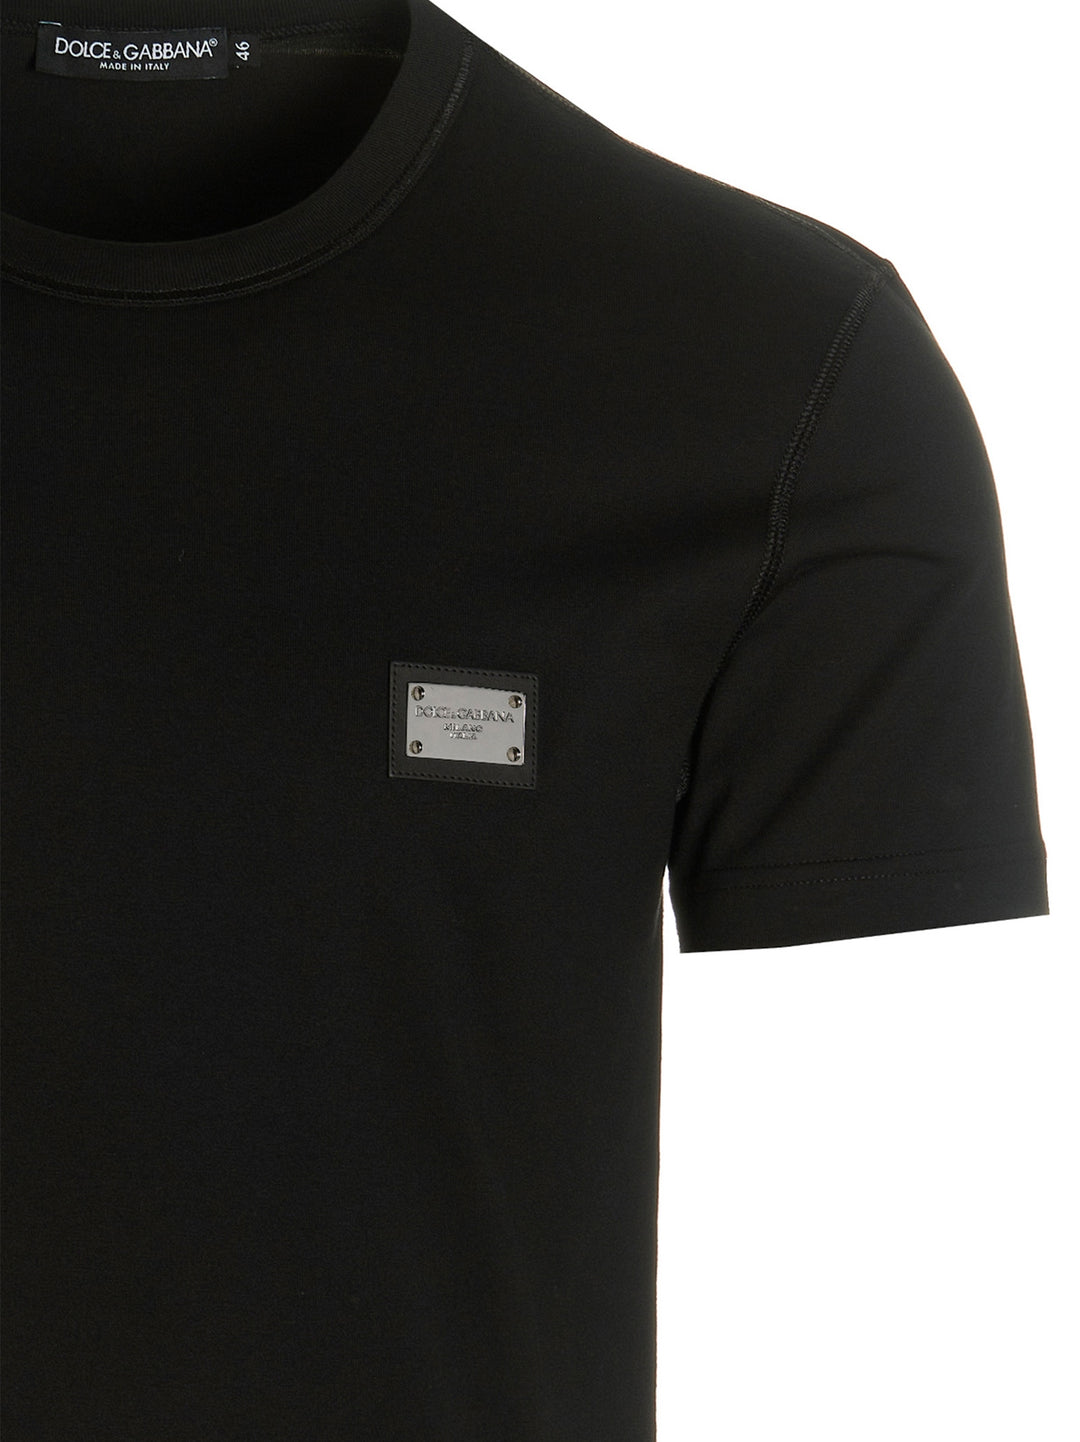 Dg Essential T Shirt Nero